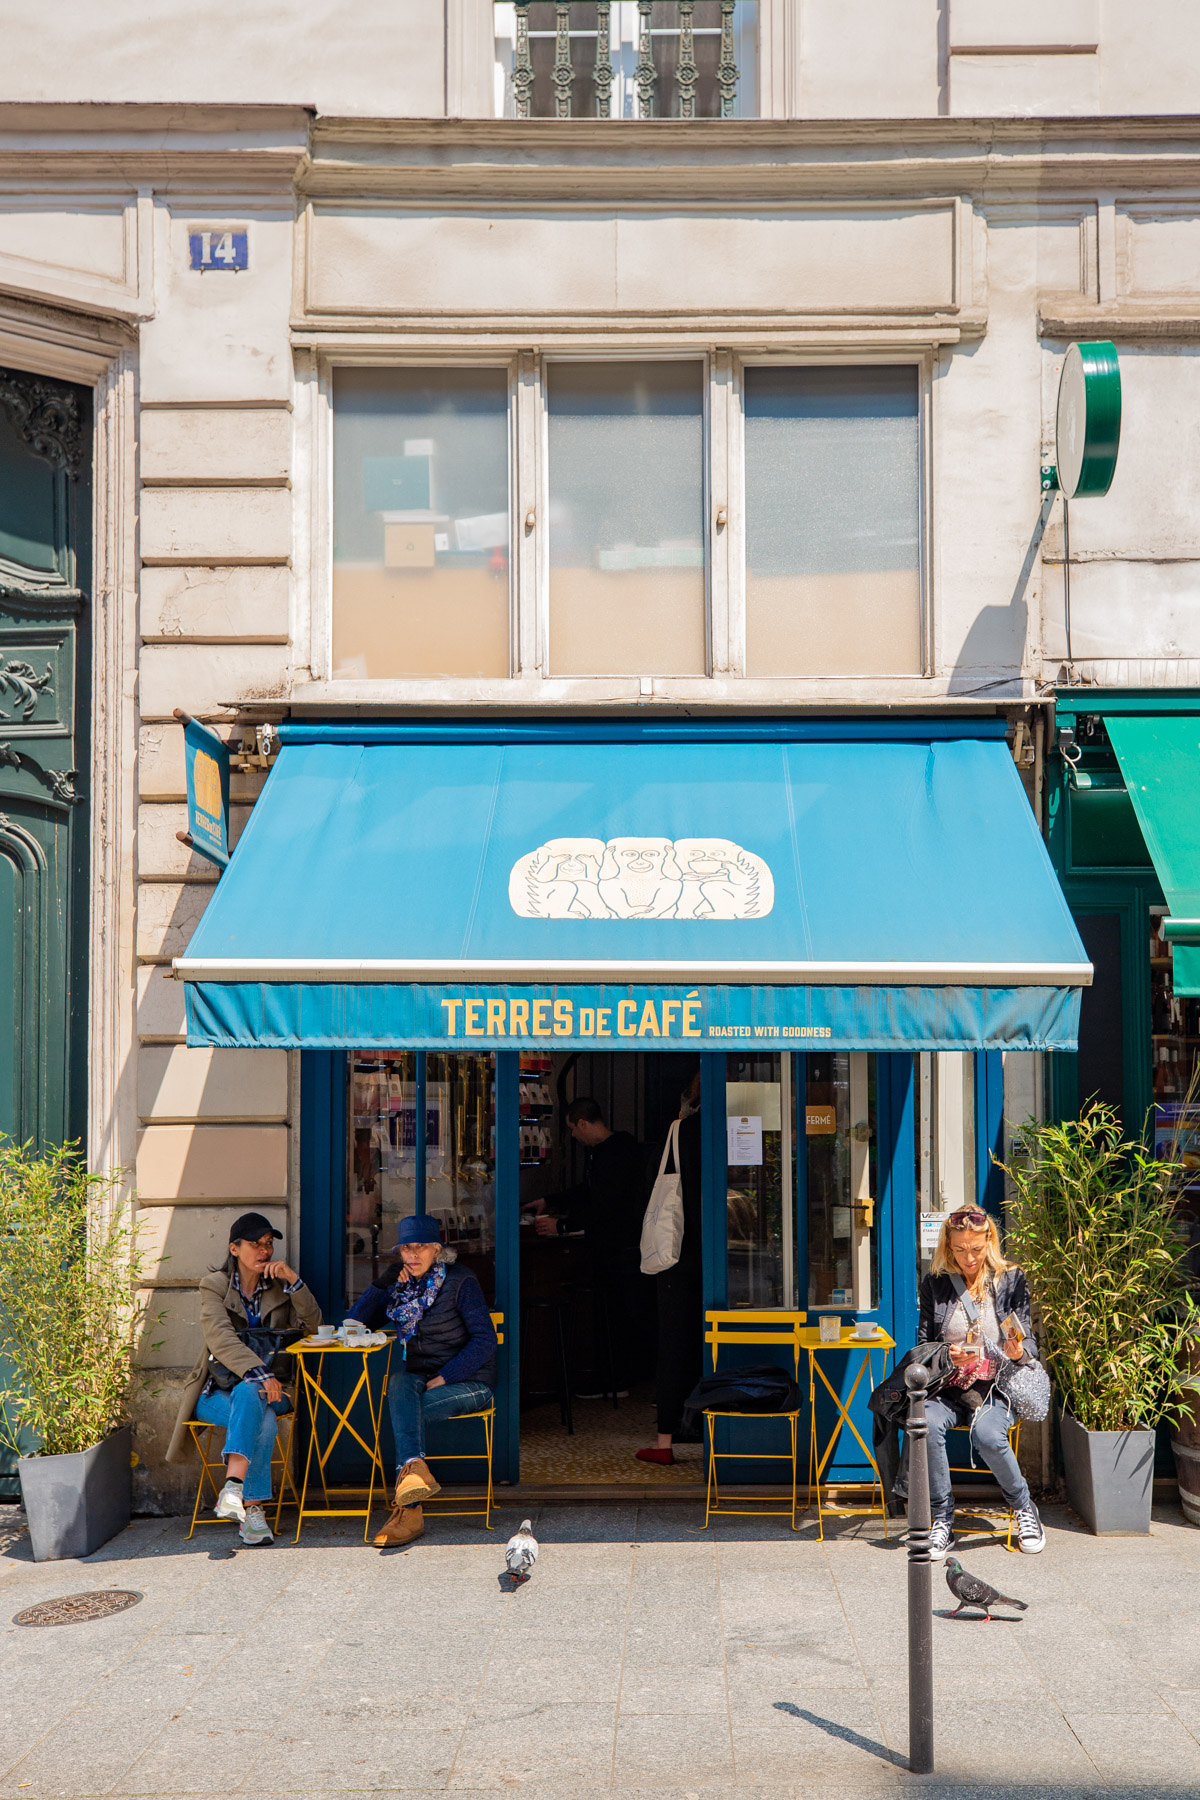 Terres de Cafe
Best coffee shops Paris